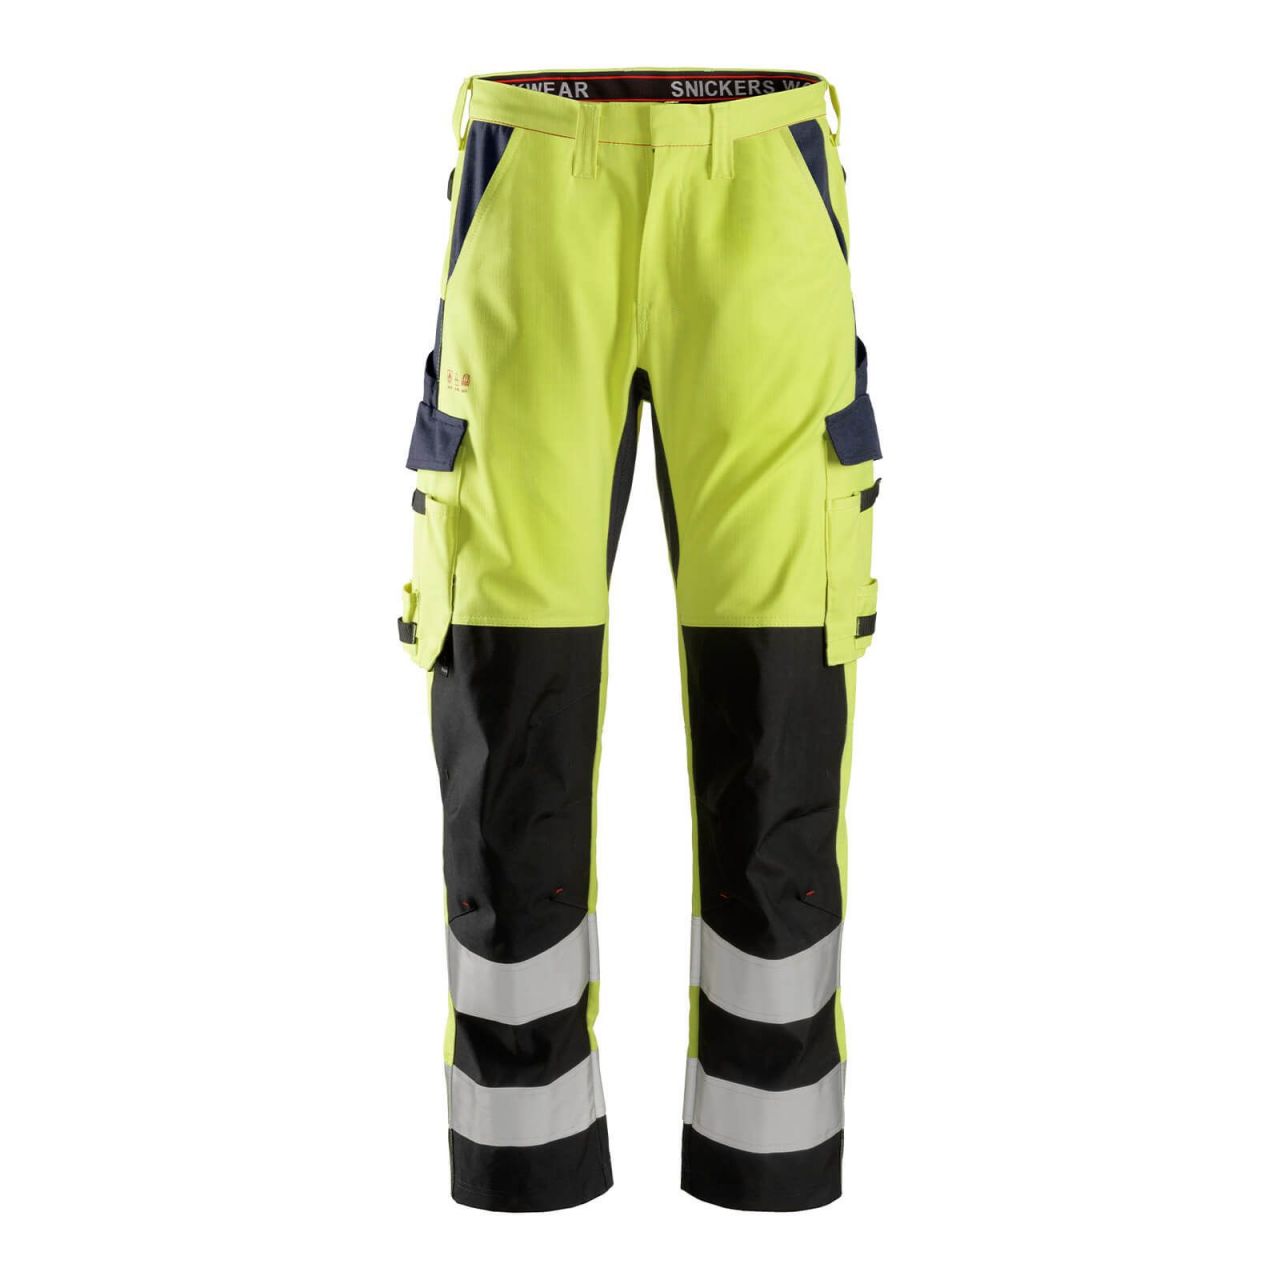 6364 Pantalones largos de trabajo de alta visibilidad clase 2 con espinilla reforzada ProtecWork amarillo-azul marino talla 56